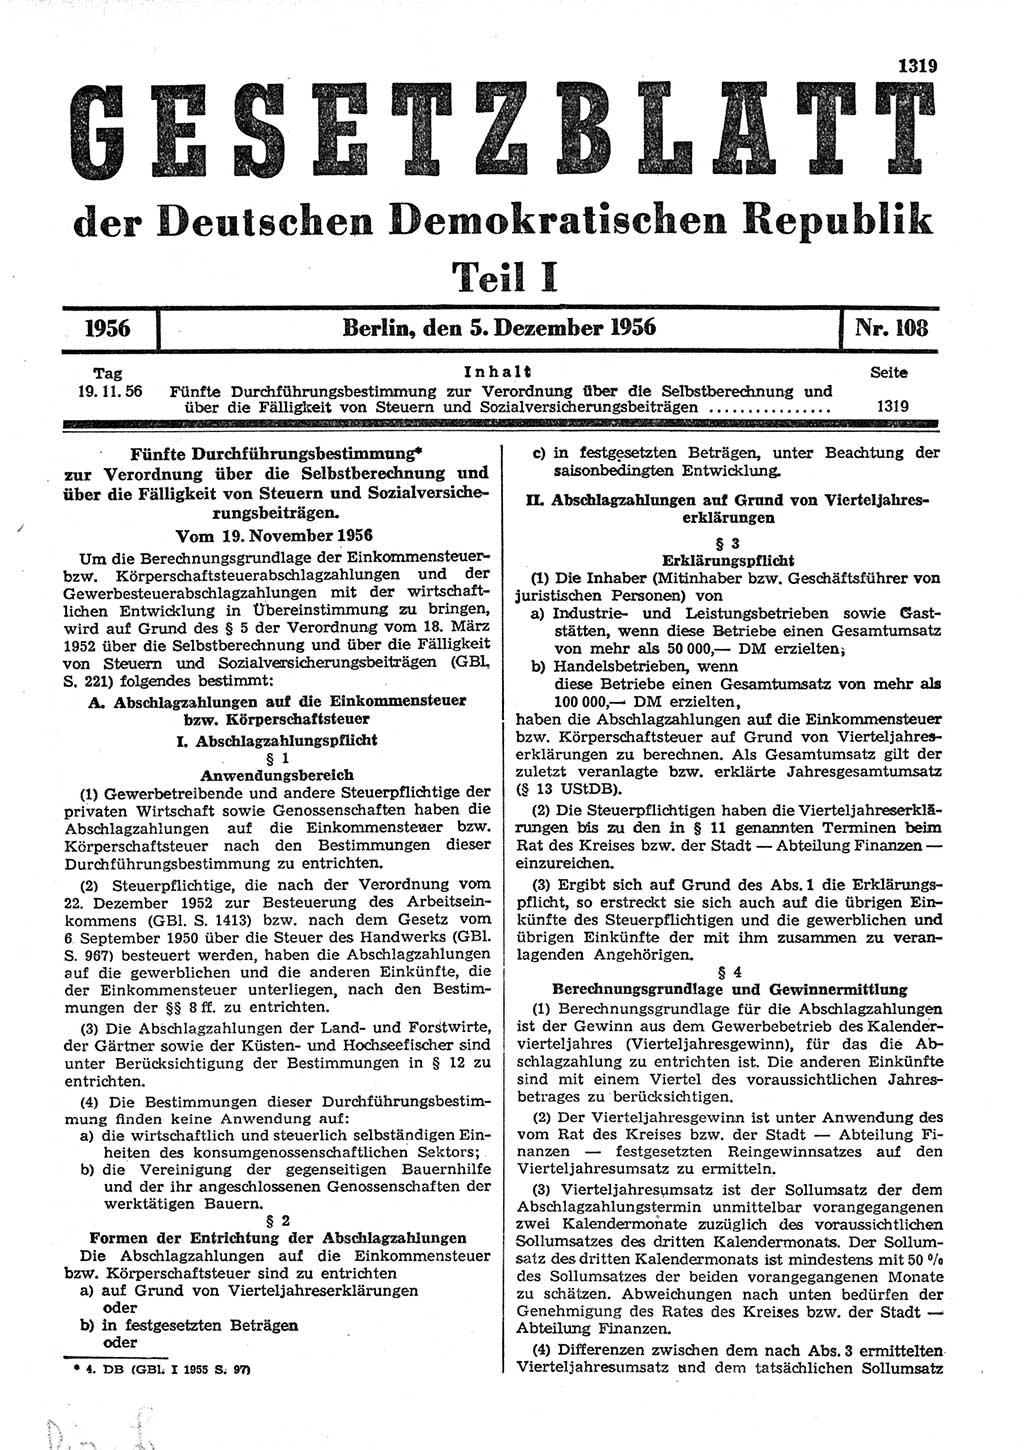 Gesetzblatt (GBl.) der Deutschen Demokratischen Republik (DDR) Teil Ⅰ 1956, Seite 1319 (GBl. DDR Ⅰ 1956, S. 1319)